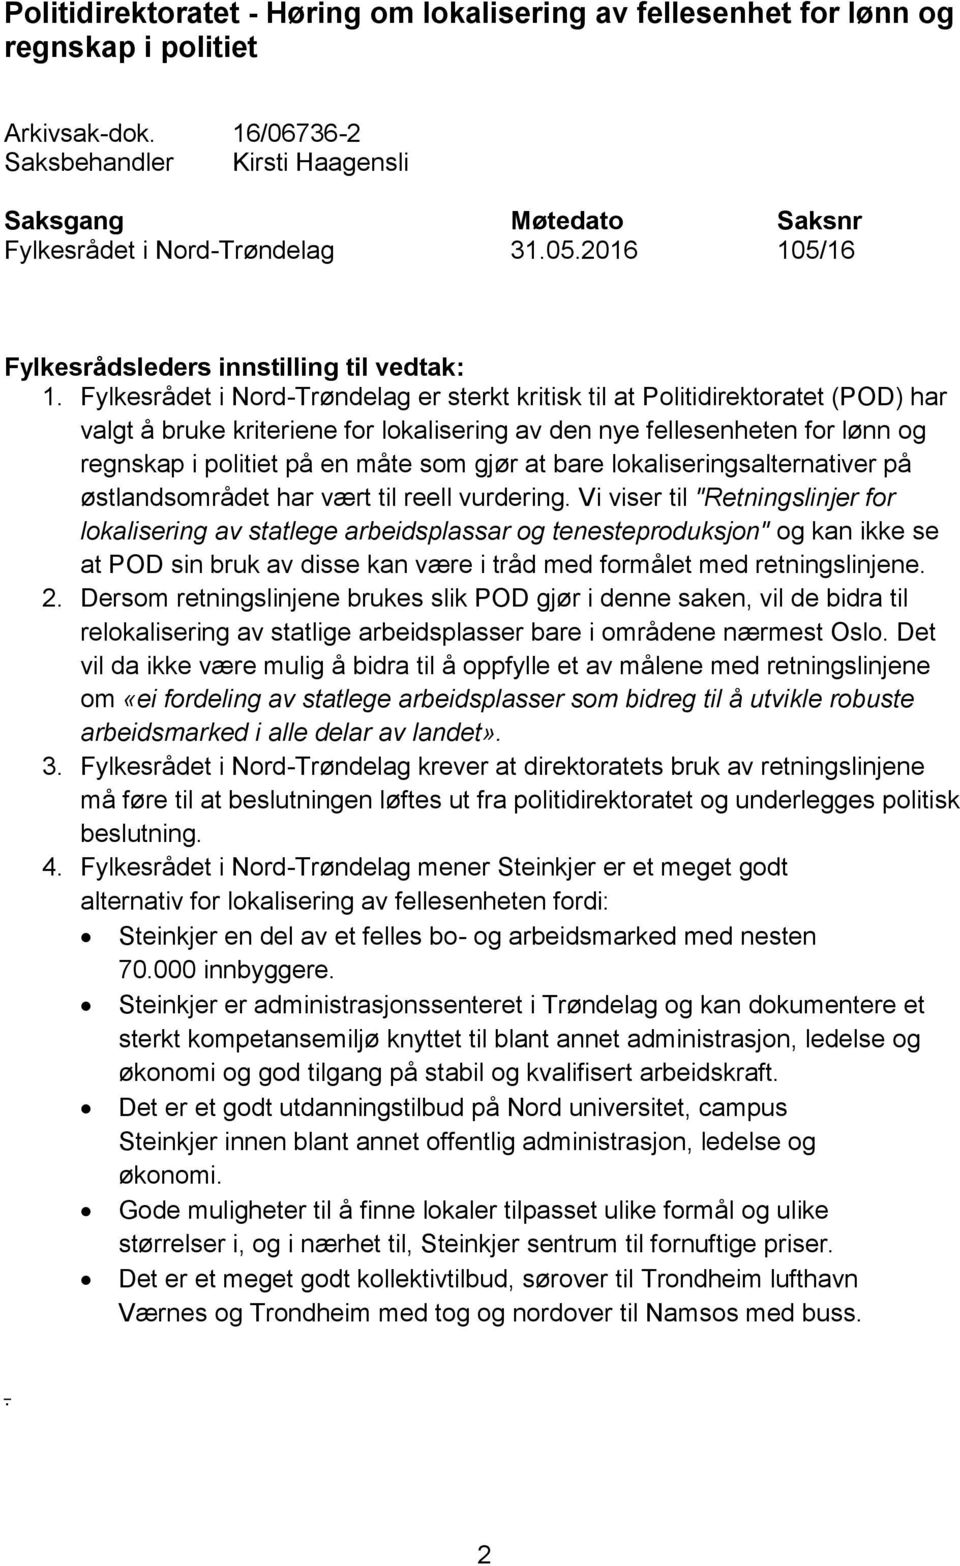 Fylkesrådet i Nord-Trøndelag er sterkt kritisk til at Politidirektoratet (POD) har valgt å bruke kriteriene for lokalisering av den nye fellesenheten for lønn og regnskap i politiet på en måte som